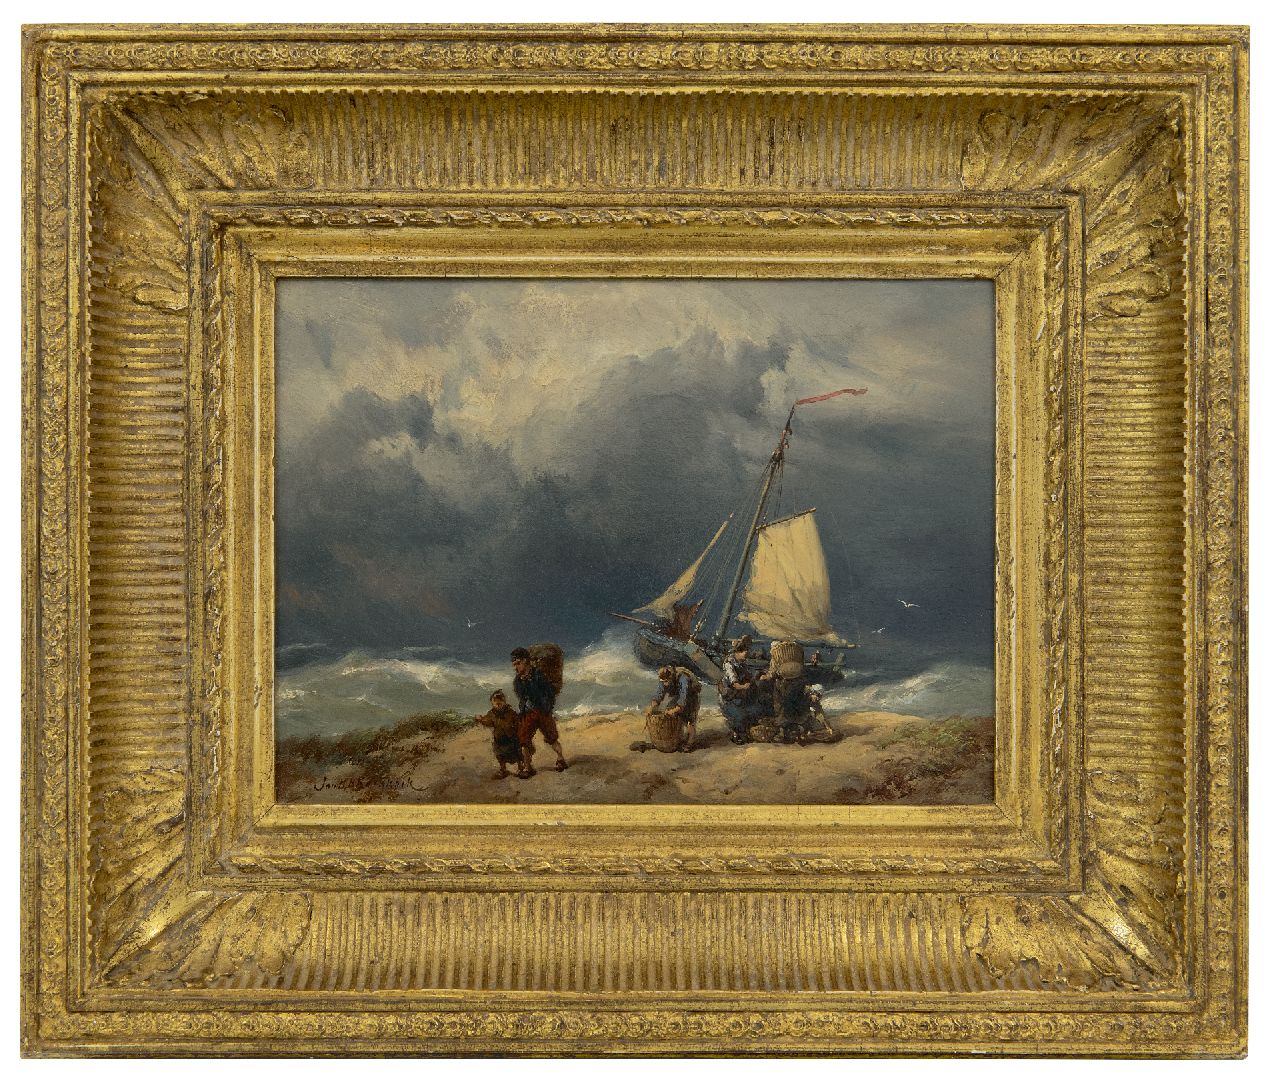 Koekkoek J.H.B.  | Johannes Hermanus Barend 'Jan H.B.' Koekkoek | Gemälde zum Verkauf angeboten | Fischerleute auf dem Strand in einem Sturm, Öl auf Holz 17,2 x 23,4 cm, Unterzeichnet u.l.